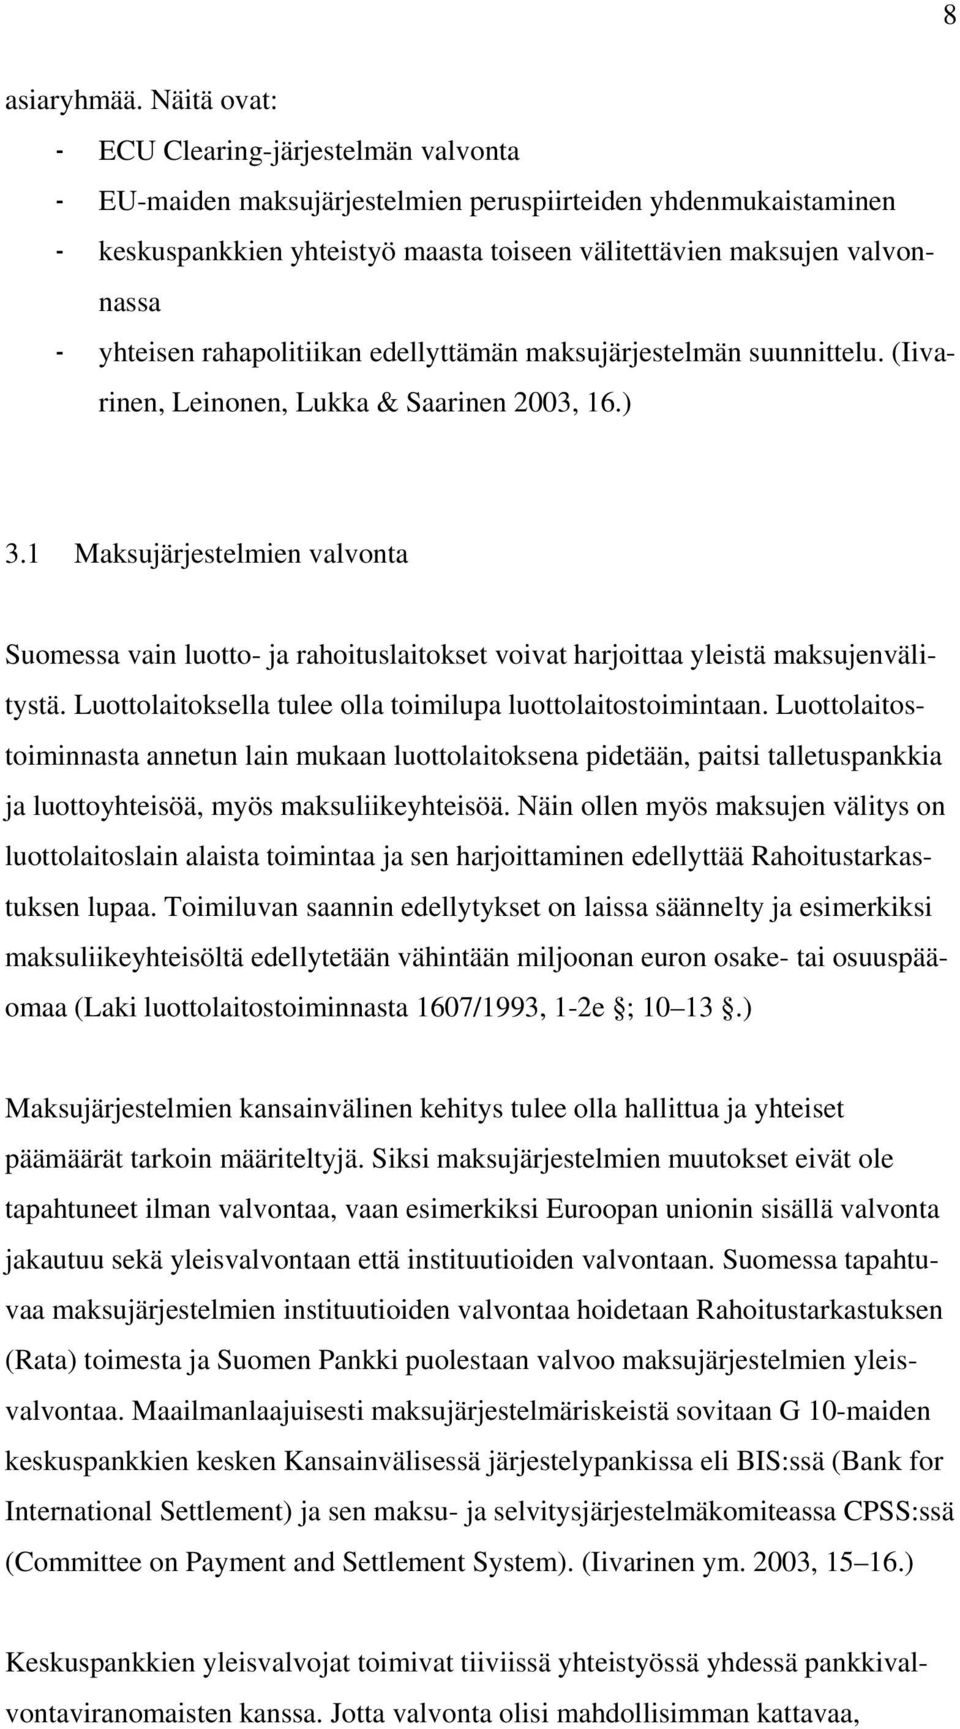 yhteisen rahapolitiikan edellyttämän maksujärjestelmän suunnittelu. (Iivarinen, Leinonen, Lukka & Saarinen 2003, 16.) 3.